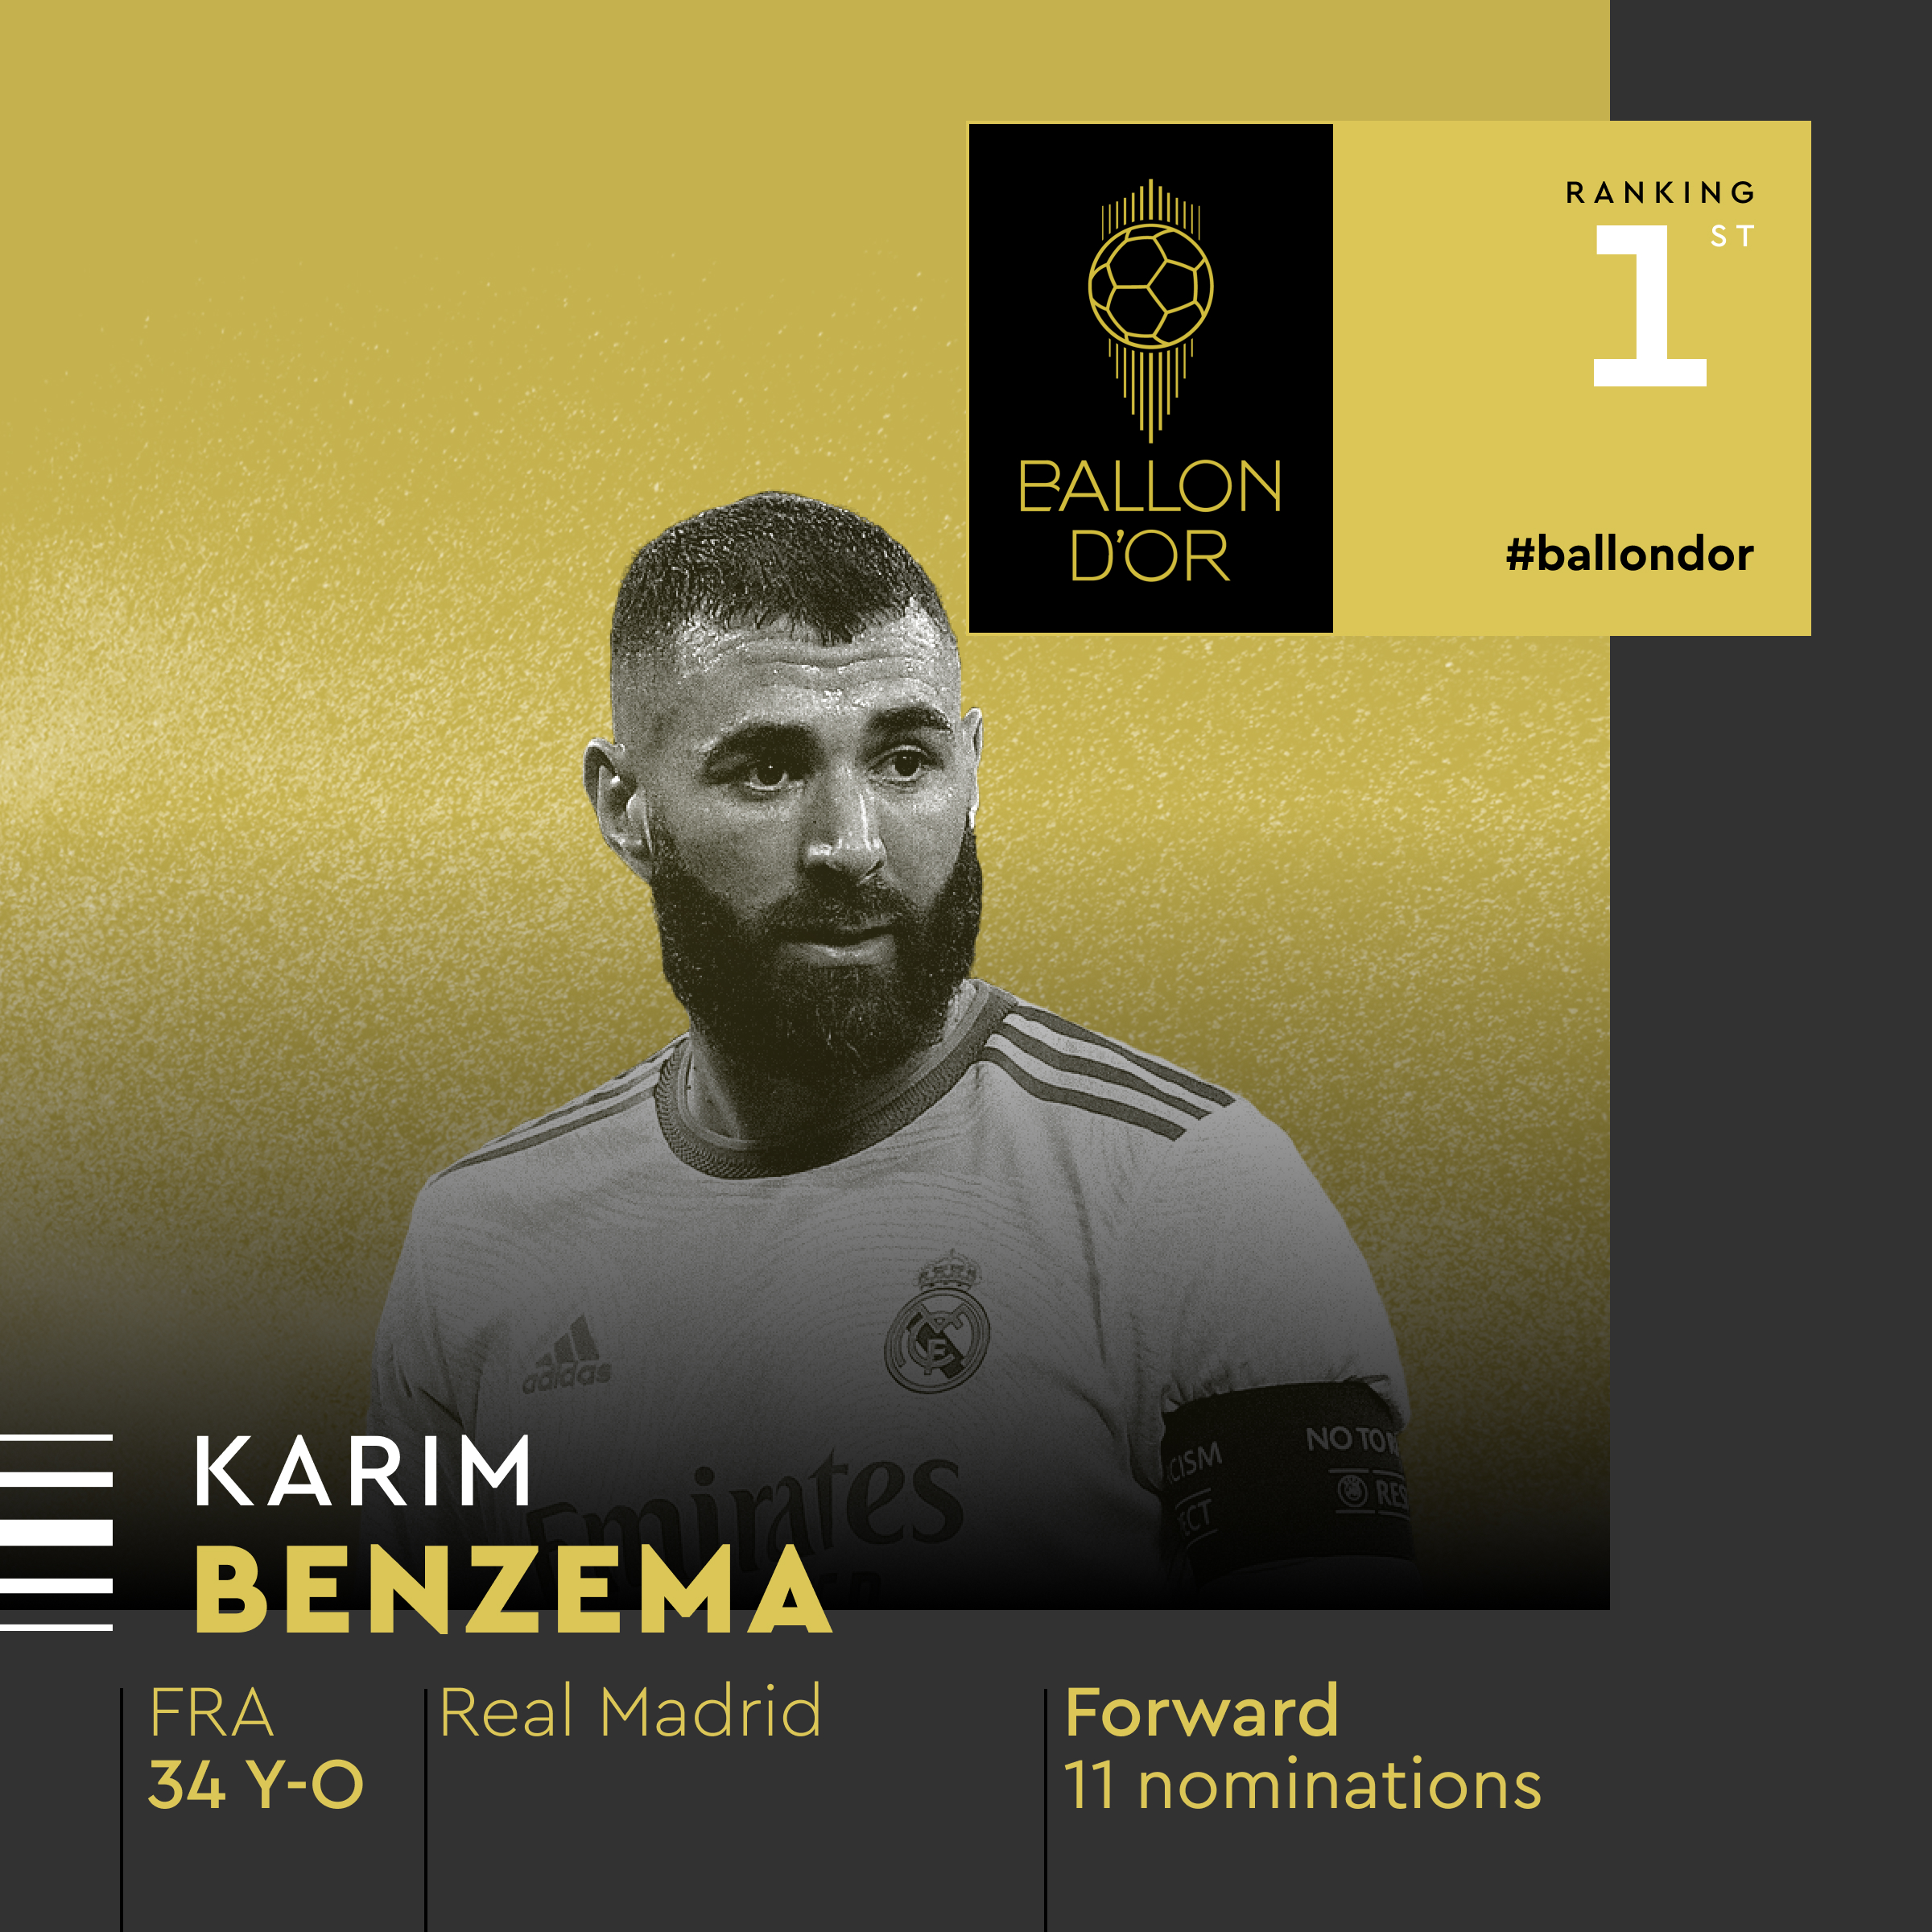 كريم بنزيما أفضل لاعب في العالم